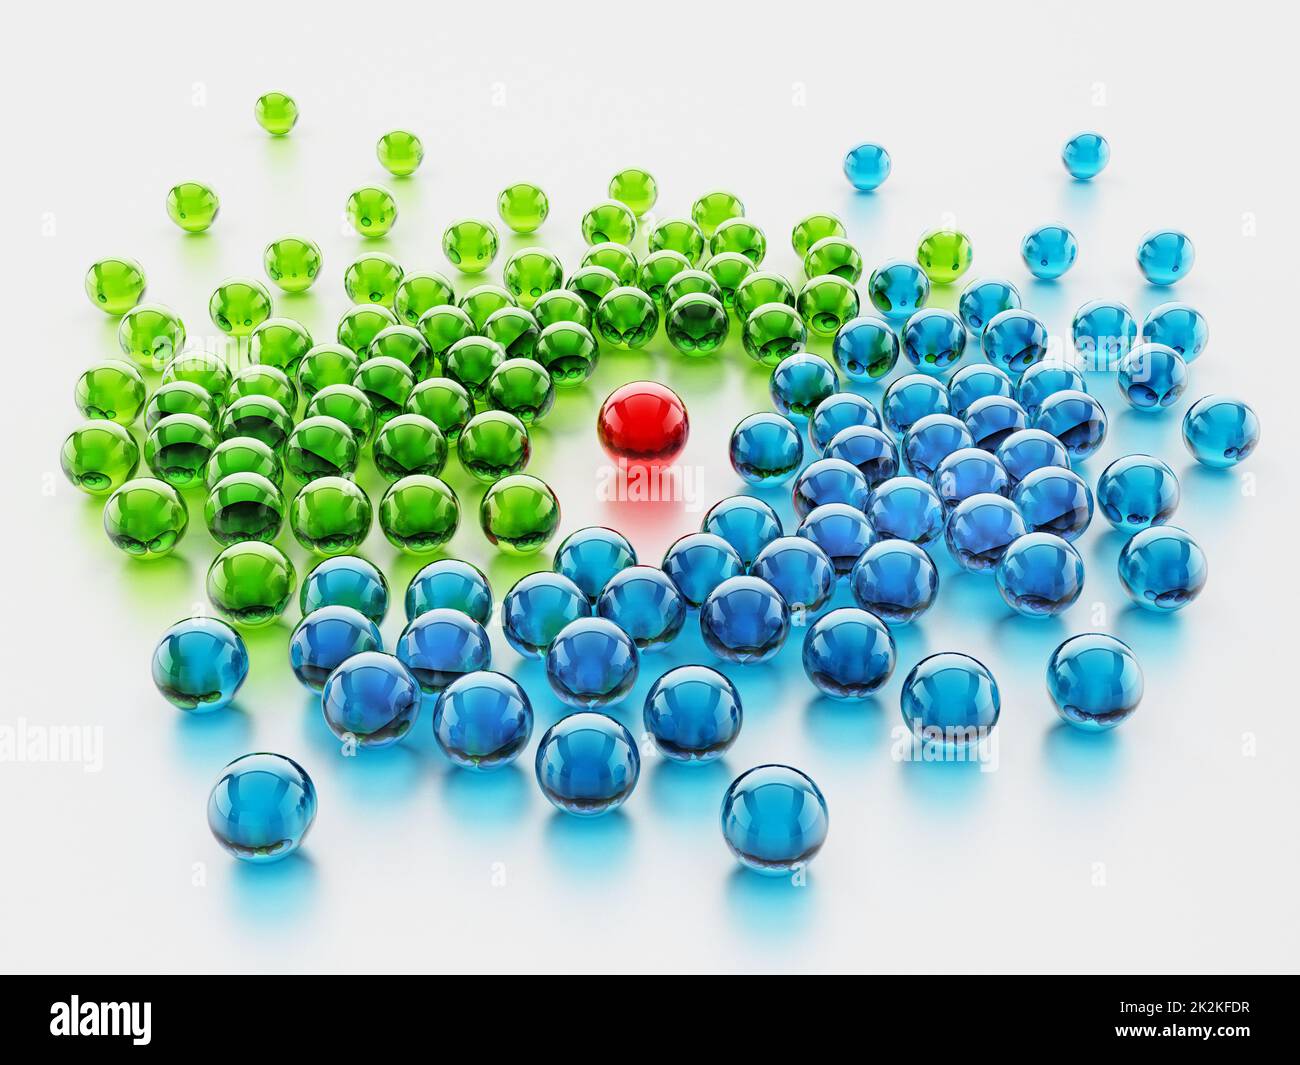 Esfera brillante roja que sobresale entre las esferas verdes y azules. Ilustración 3D Foto de stock